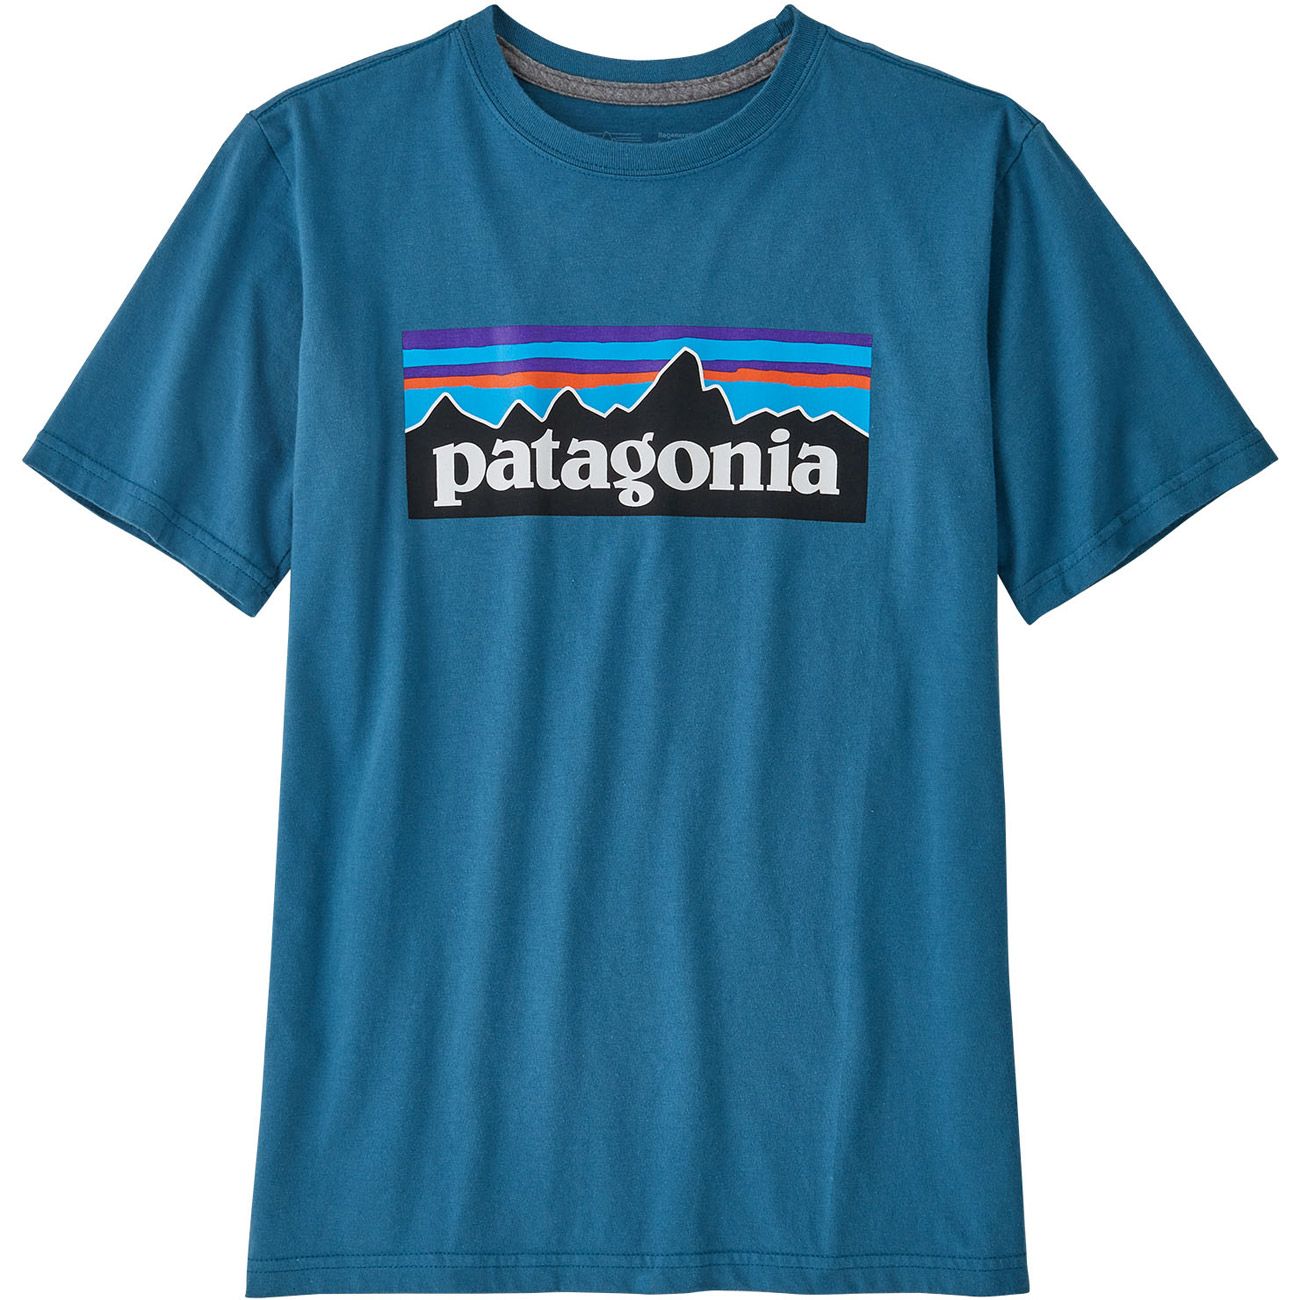 Patagonia Kinder T-Shirt Regenerative Organic Certified Cott von Patagonia